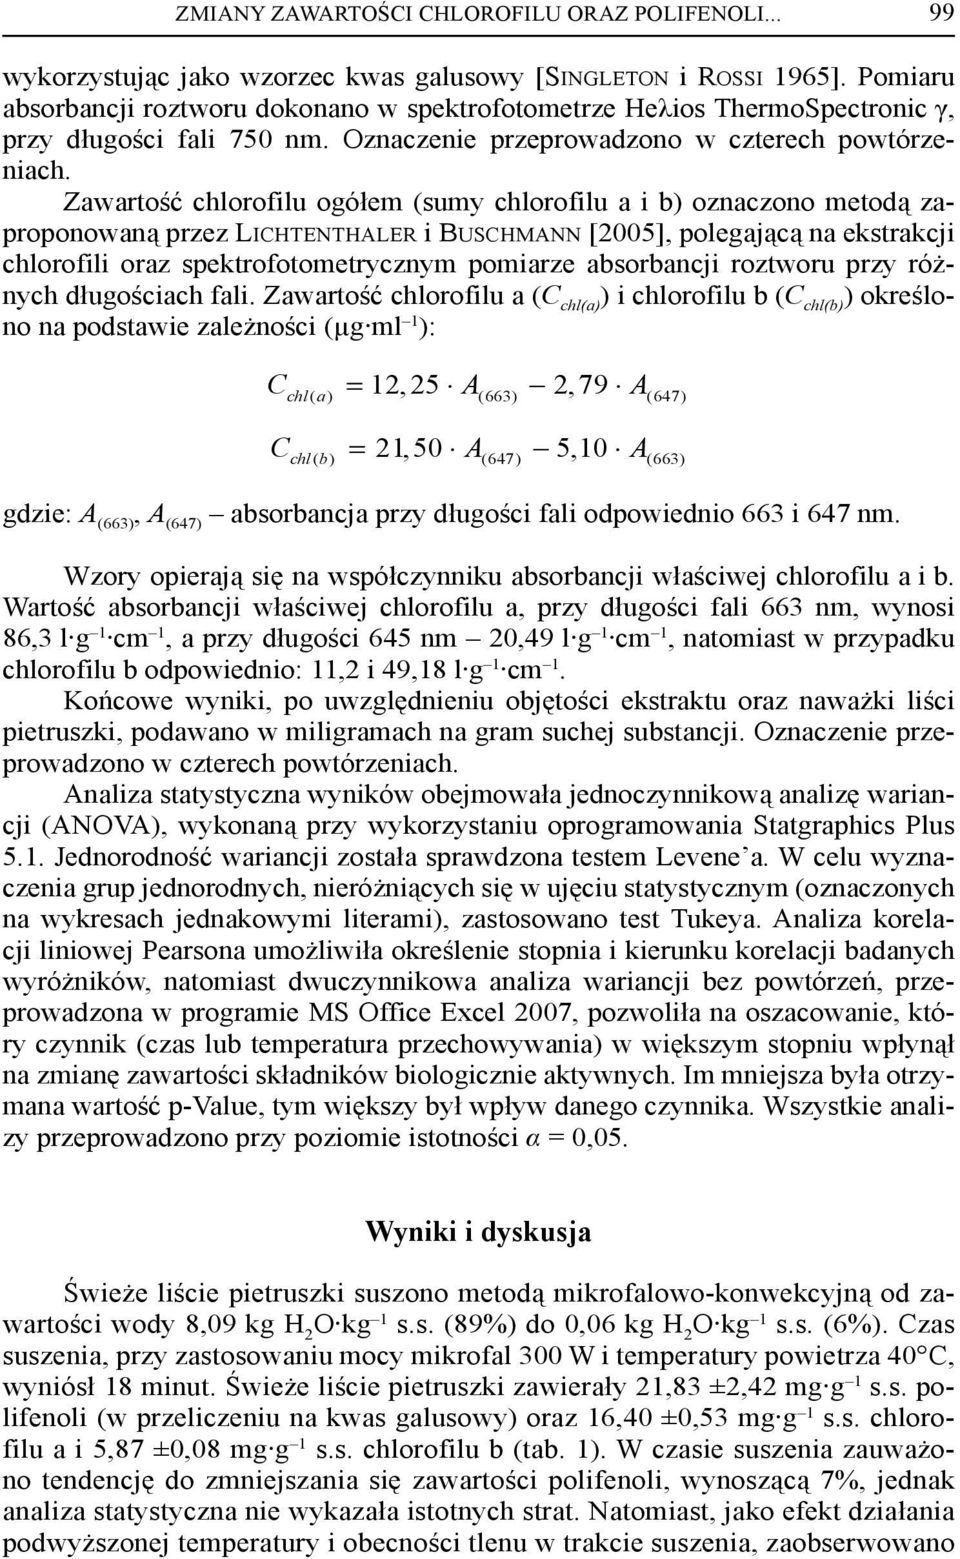 Zawartość chlorofilu ogółem (sumy chlorofilu a i ) oznaczono metodą zaproponowaną przez LICHTENTHALER i BUSCHMANN [2005], polegającą na ekstrakcji chlorofili oraz spektrofotometrycznym pomiarze